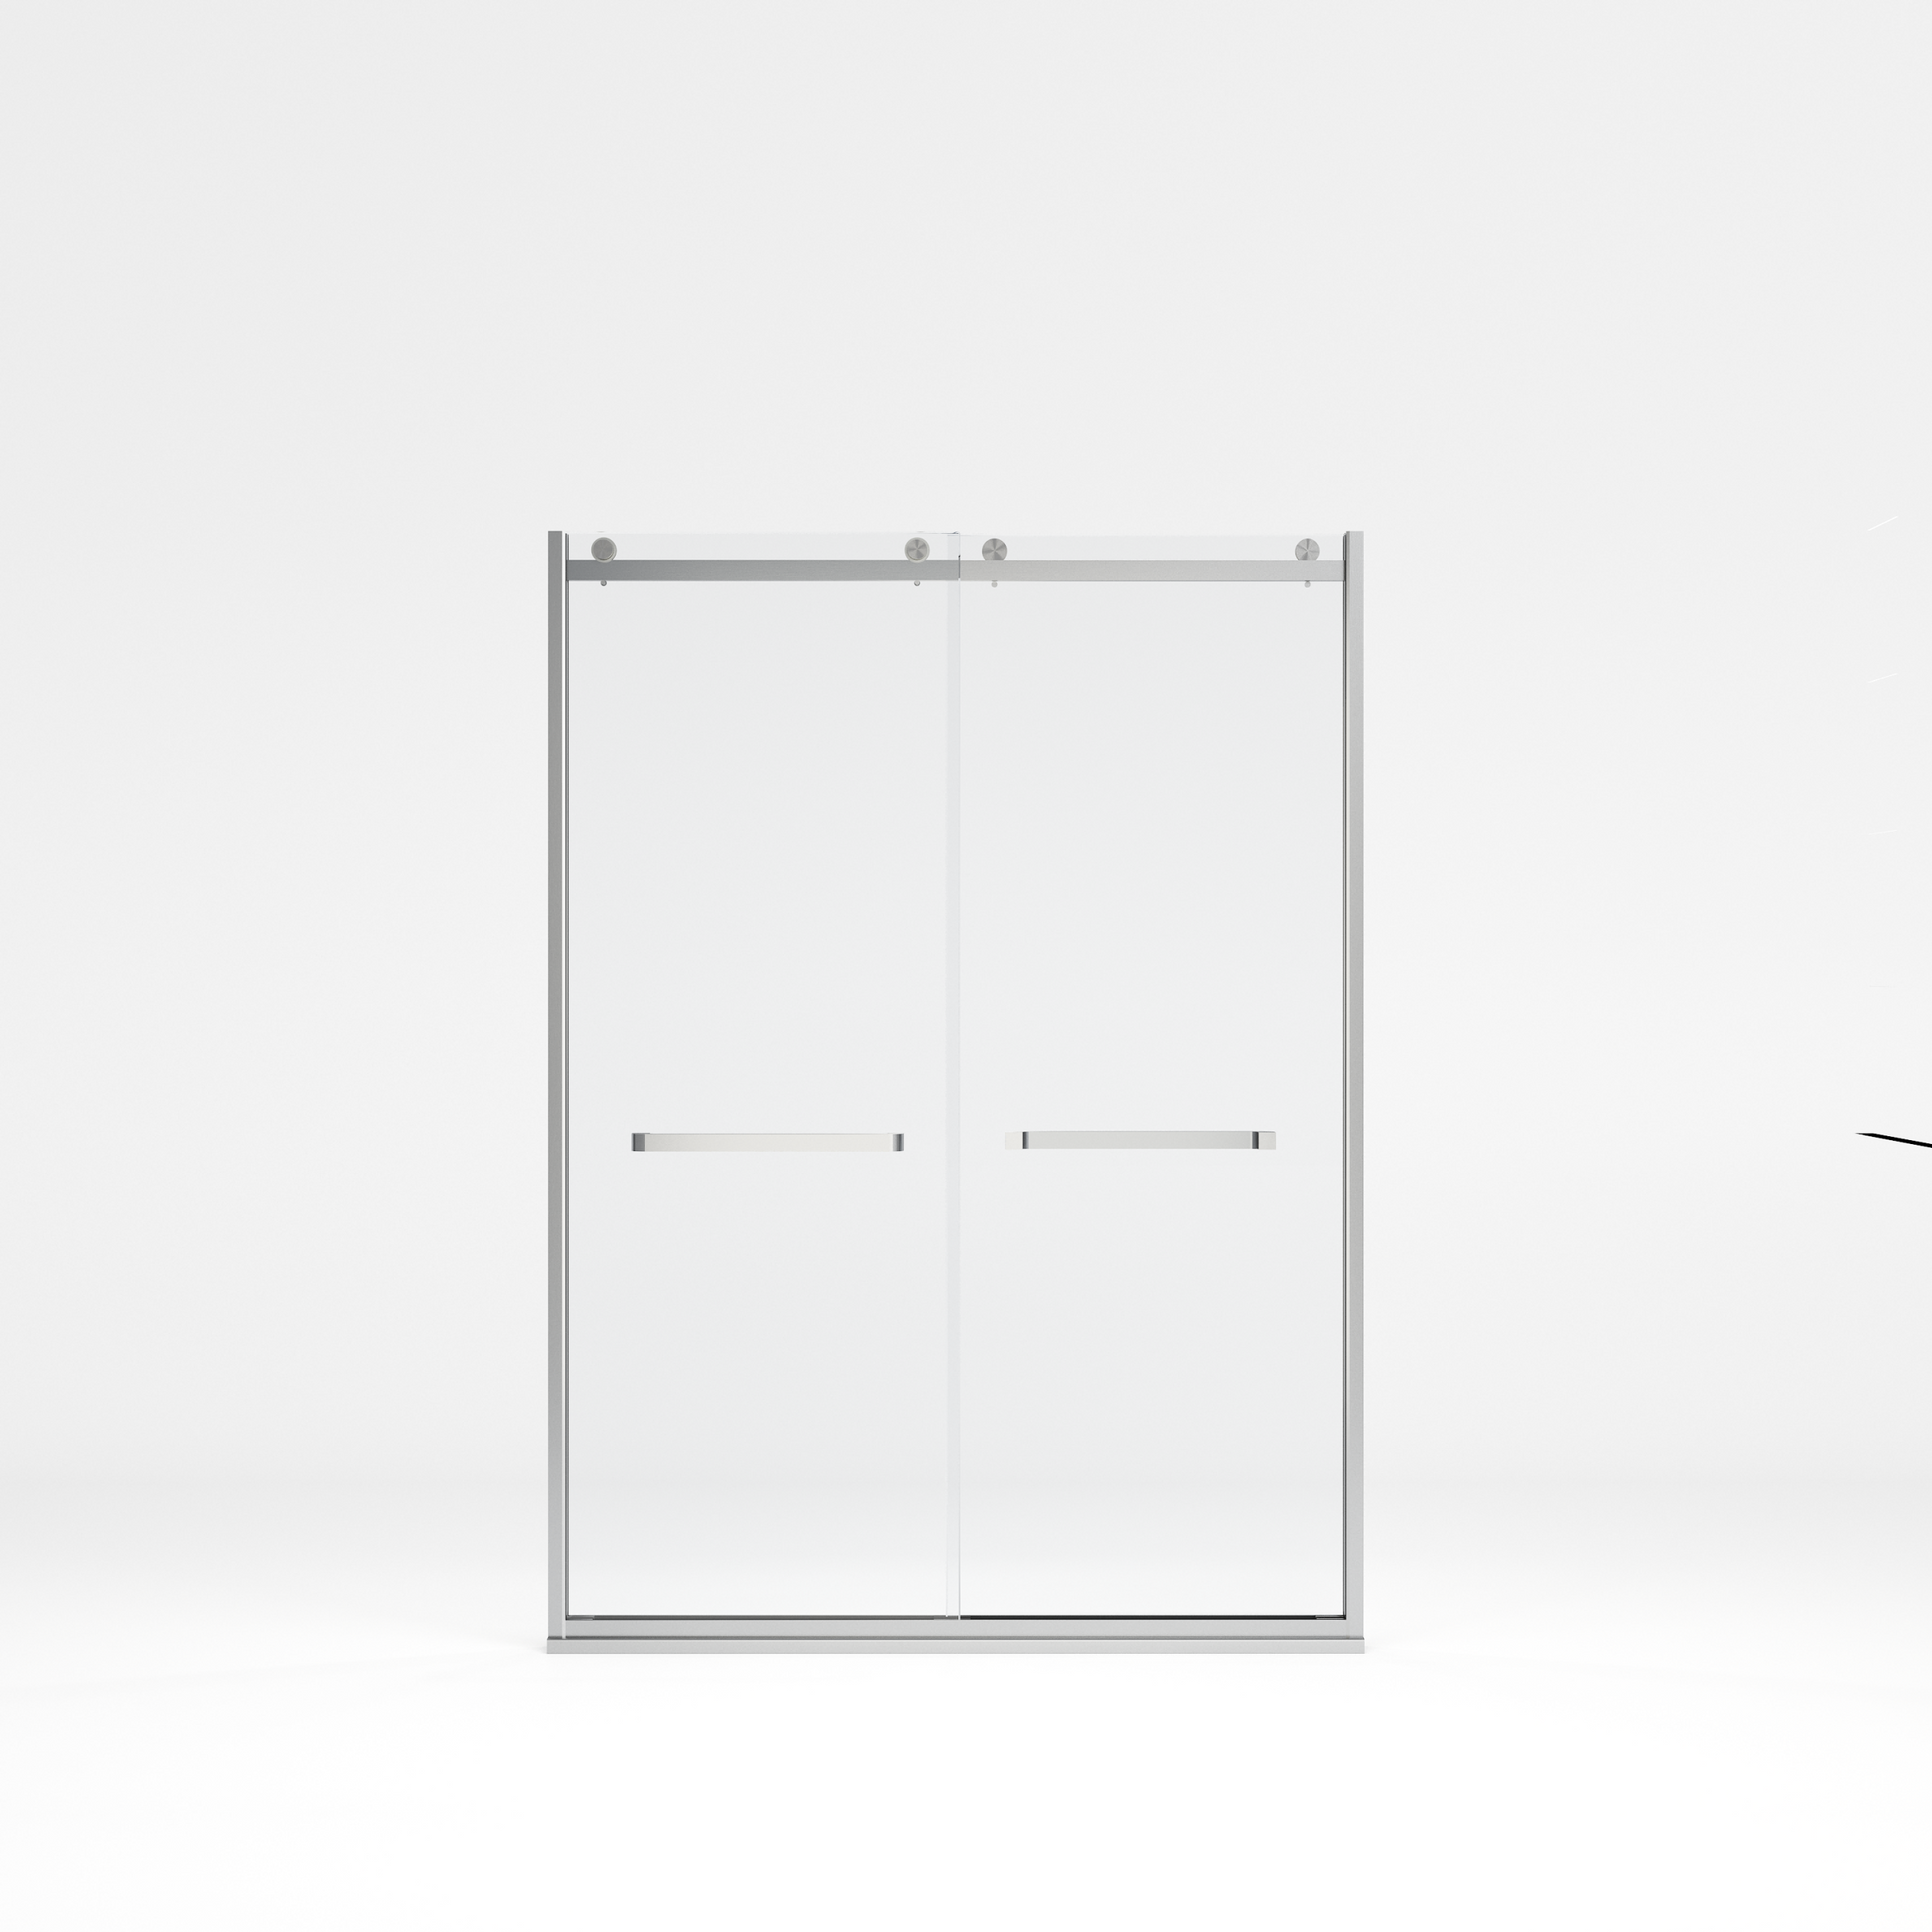 Frameless Double Sliding Glass Shower Doors, 60"